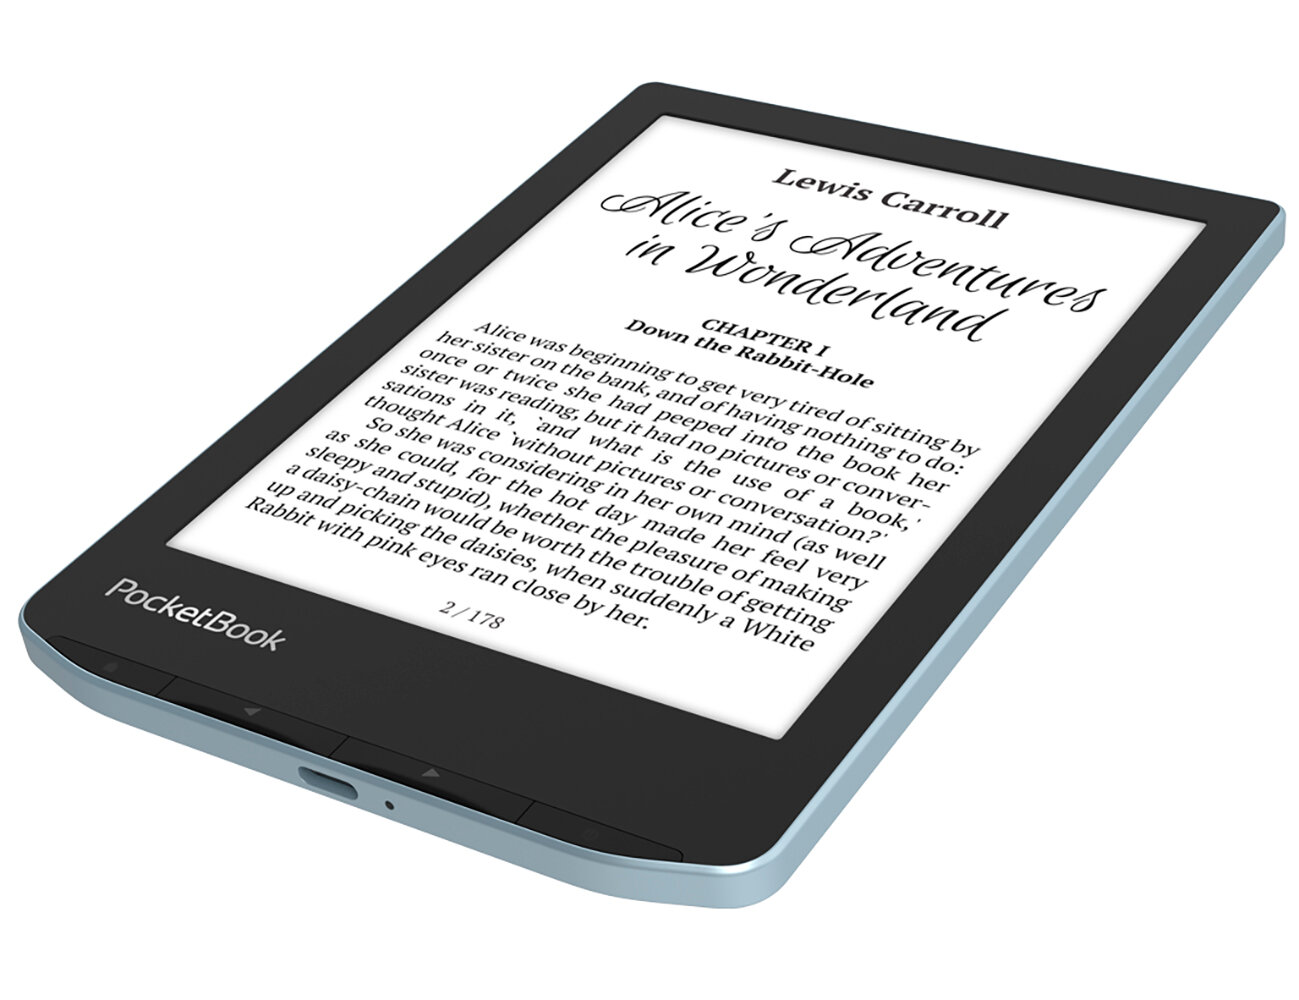 Электронная книга PocketBook 629 Verse голубой с обложкой Orange